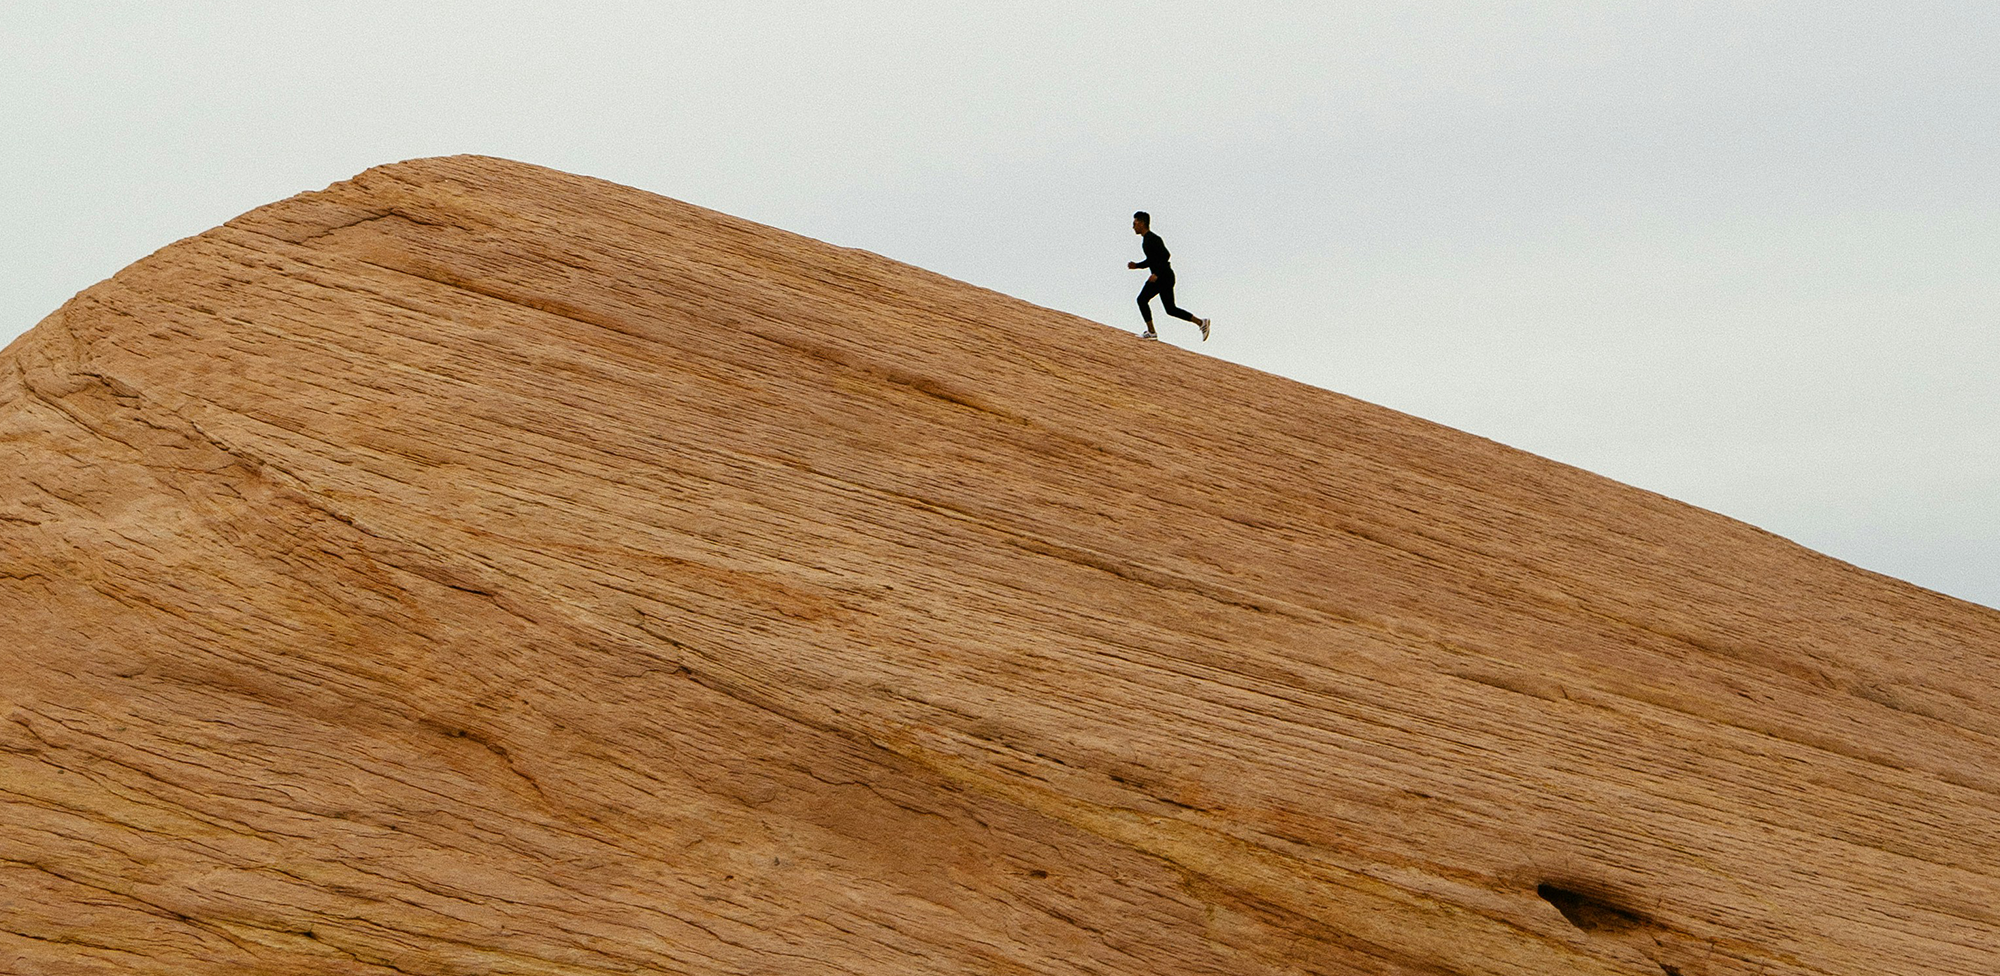 Long shot of a man running up a an incline